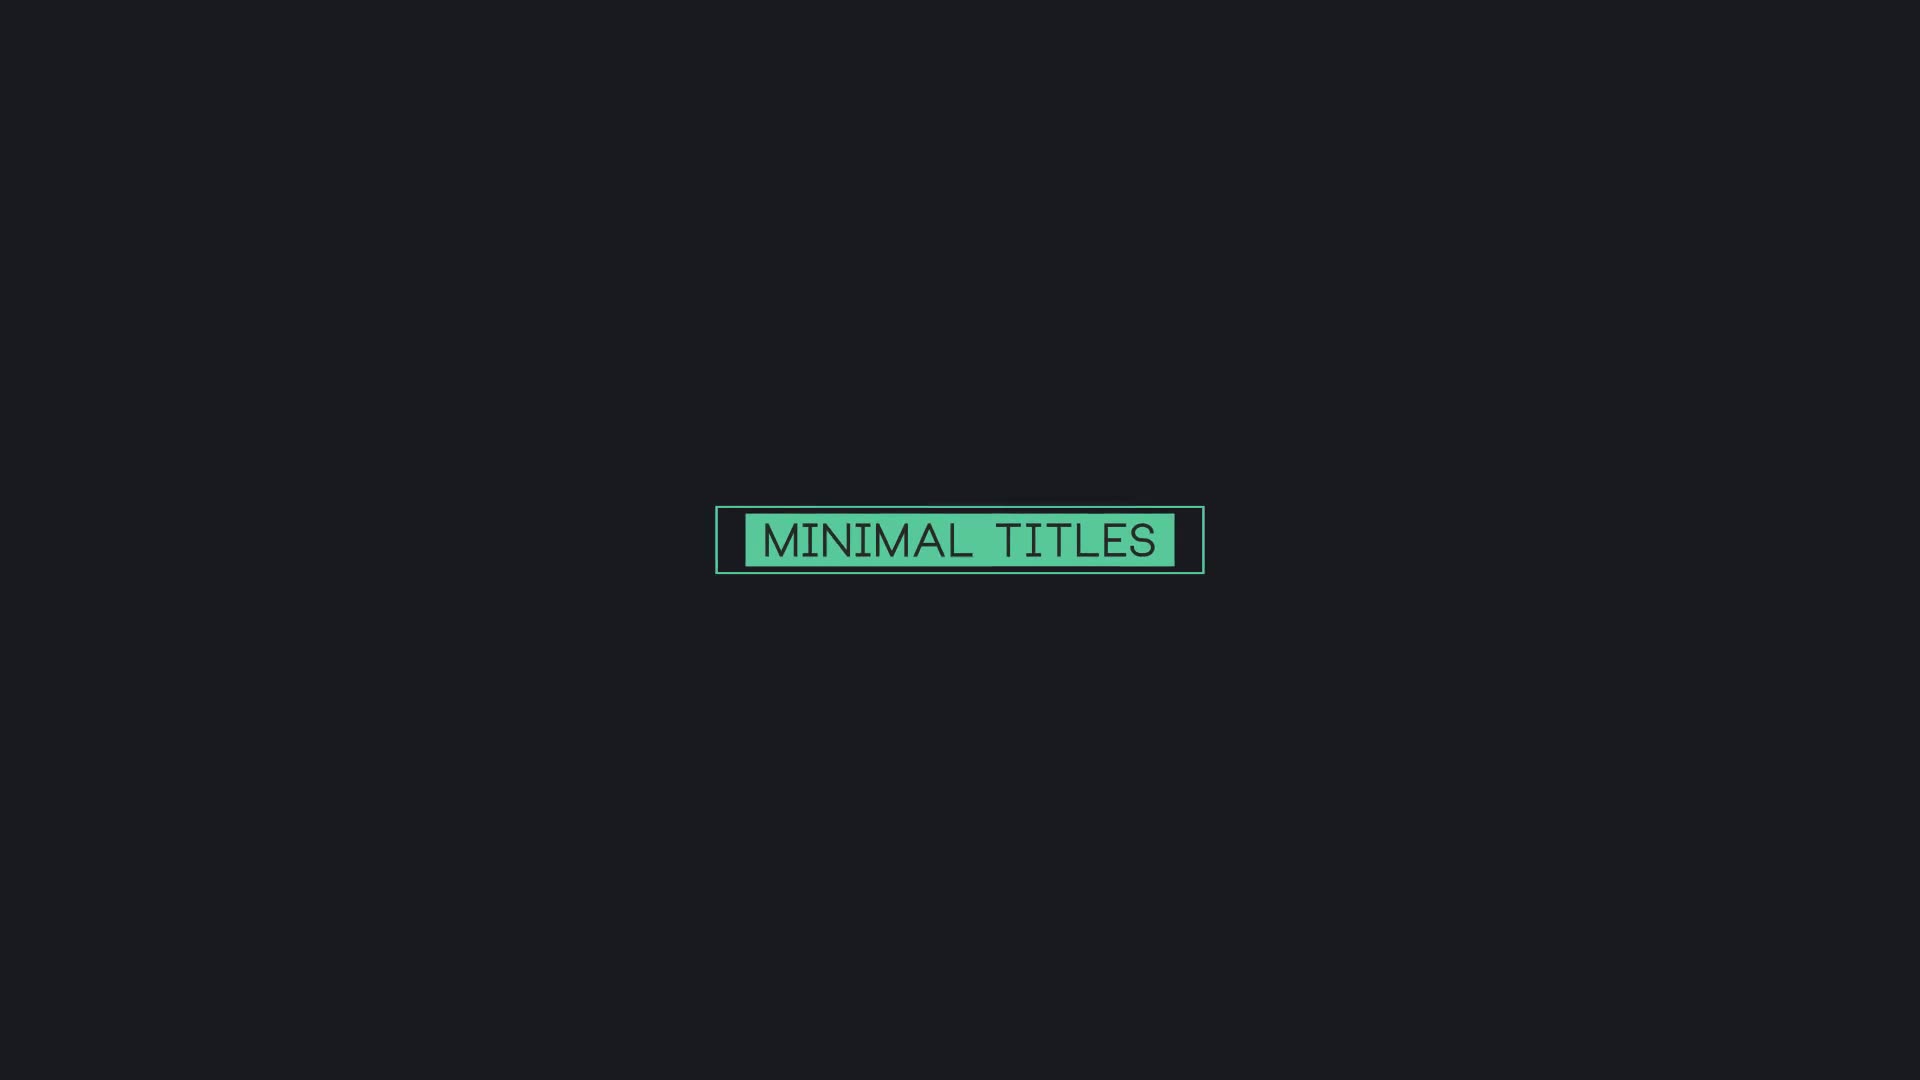 16 Minimal Titles - Download Videohive 16092182